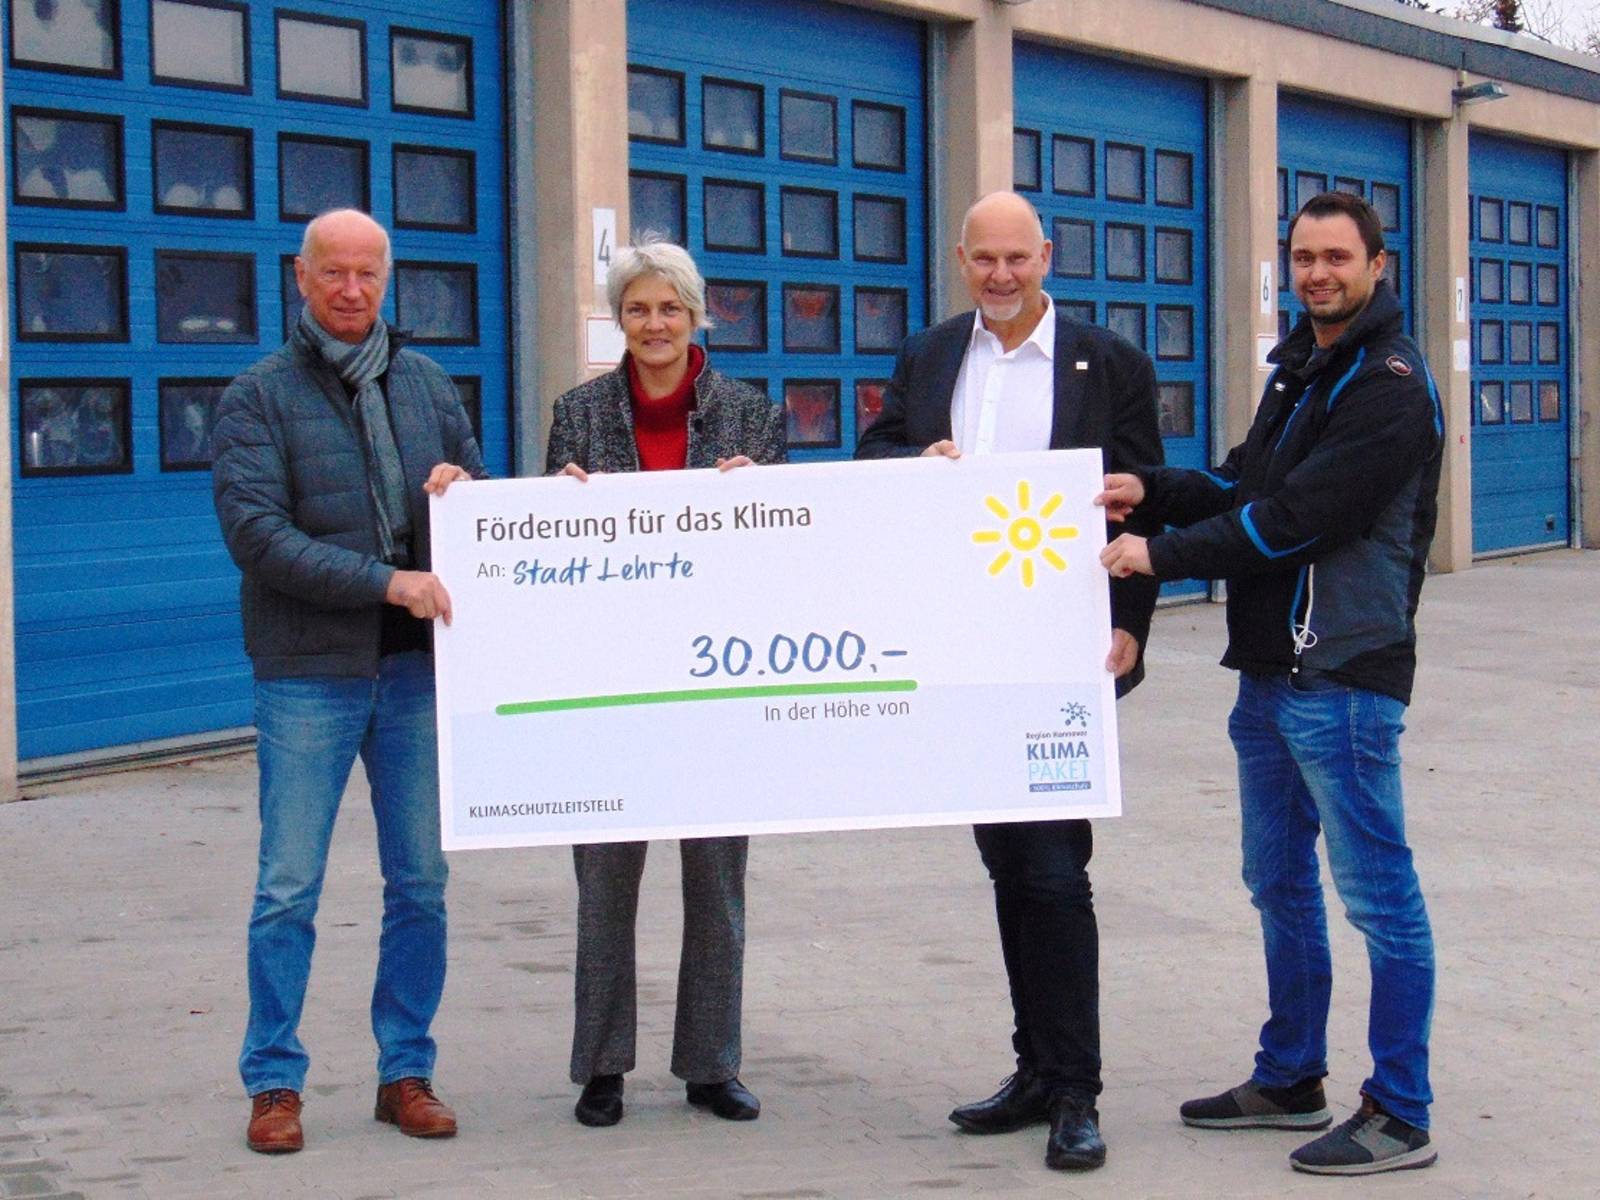 Vier Personen mit einem symbolischen Scheck über 30.000 Euro vor den Toren einer Werkshalle